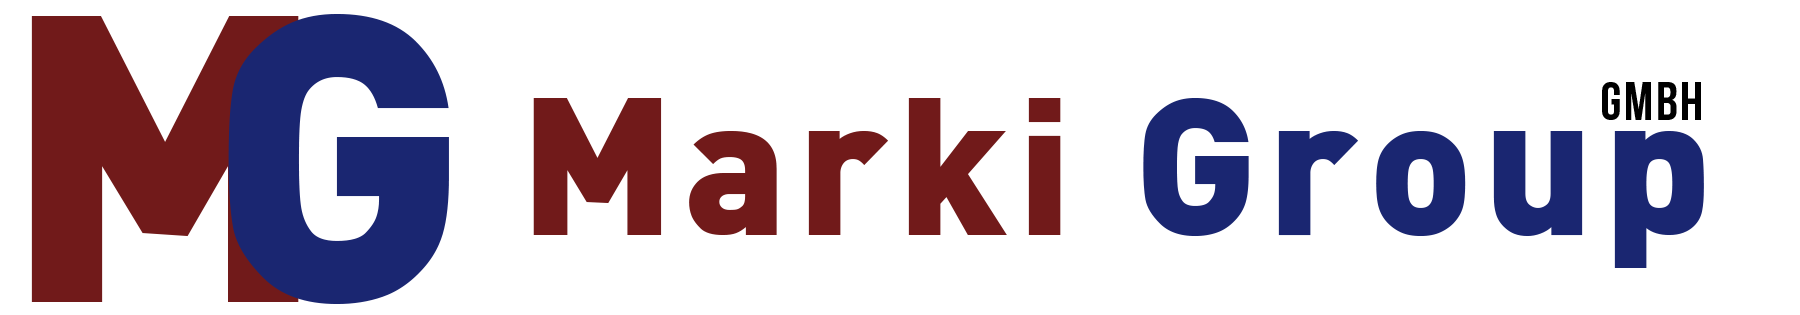 Marki Group